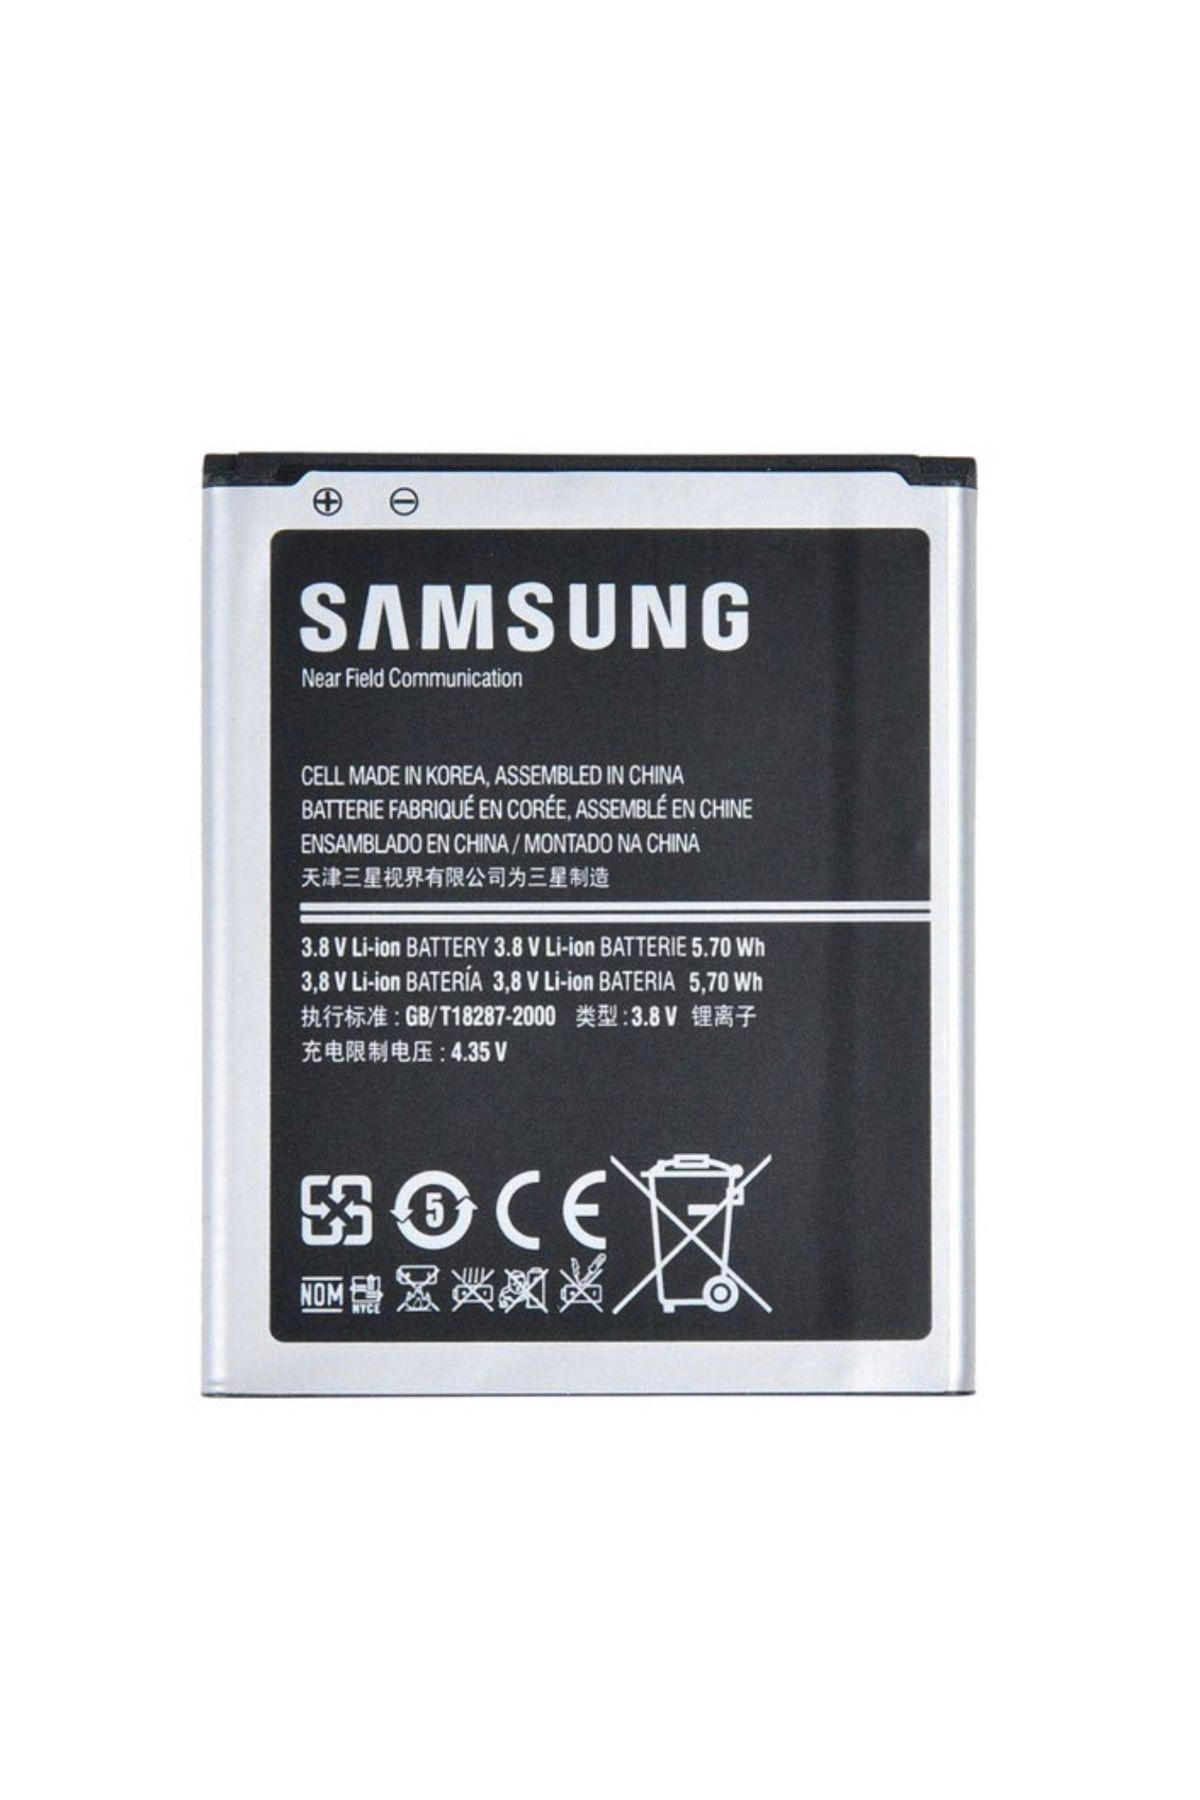 VMR Samsung Galaxy S3 Mını I8190 Uyumlu Batarya Pil